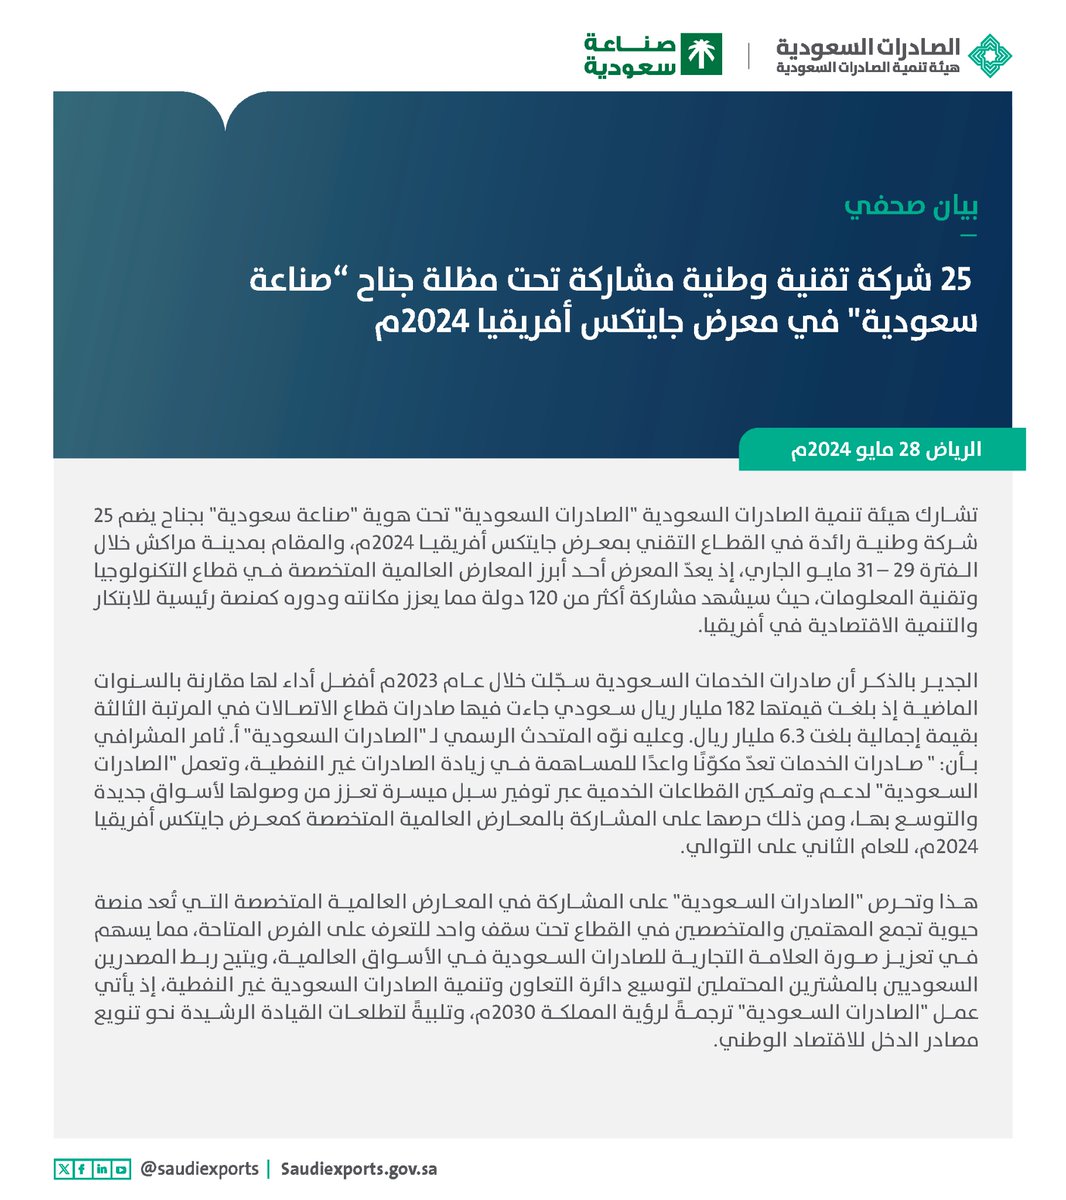 بيان صحفي 📃| 25 شركة تقنية وطنية مشاركة تحت مظلة جناح “صناعة سعودية' في معرض جايتكس أفريقيا 2024م.